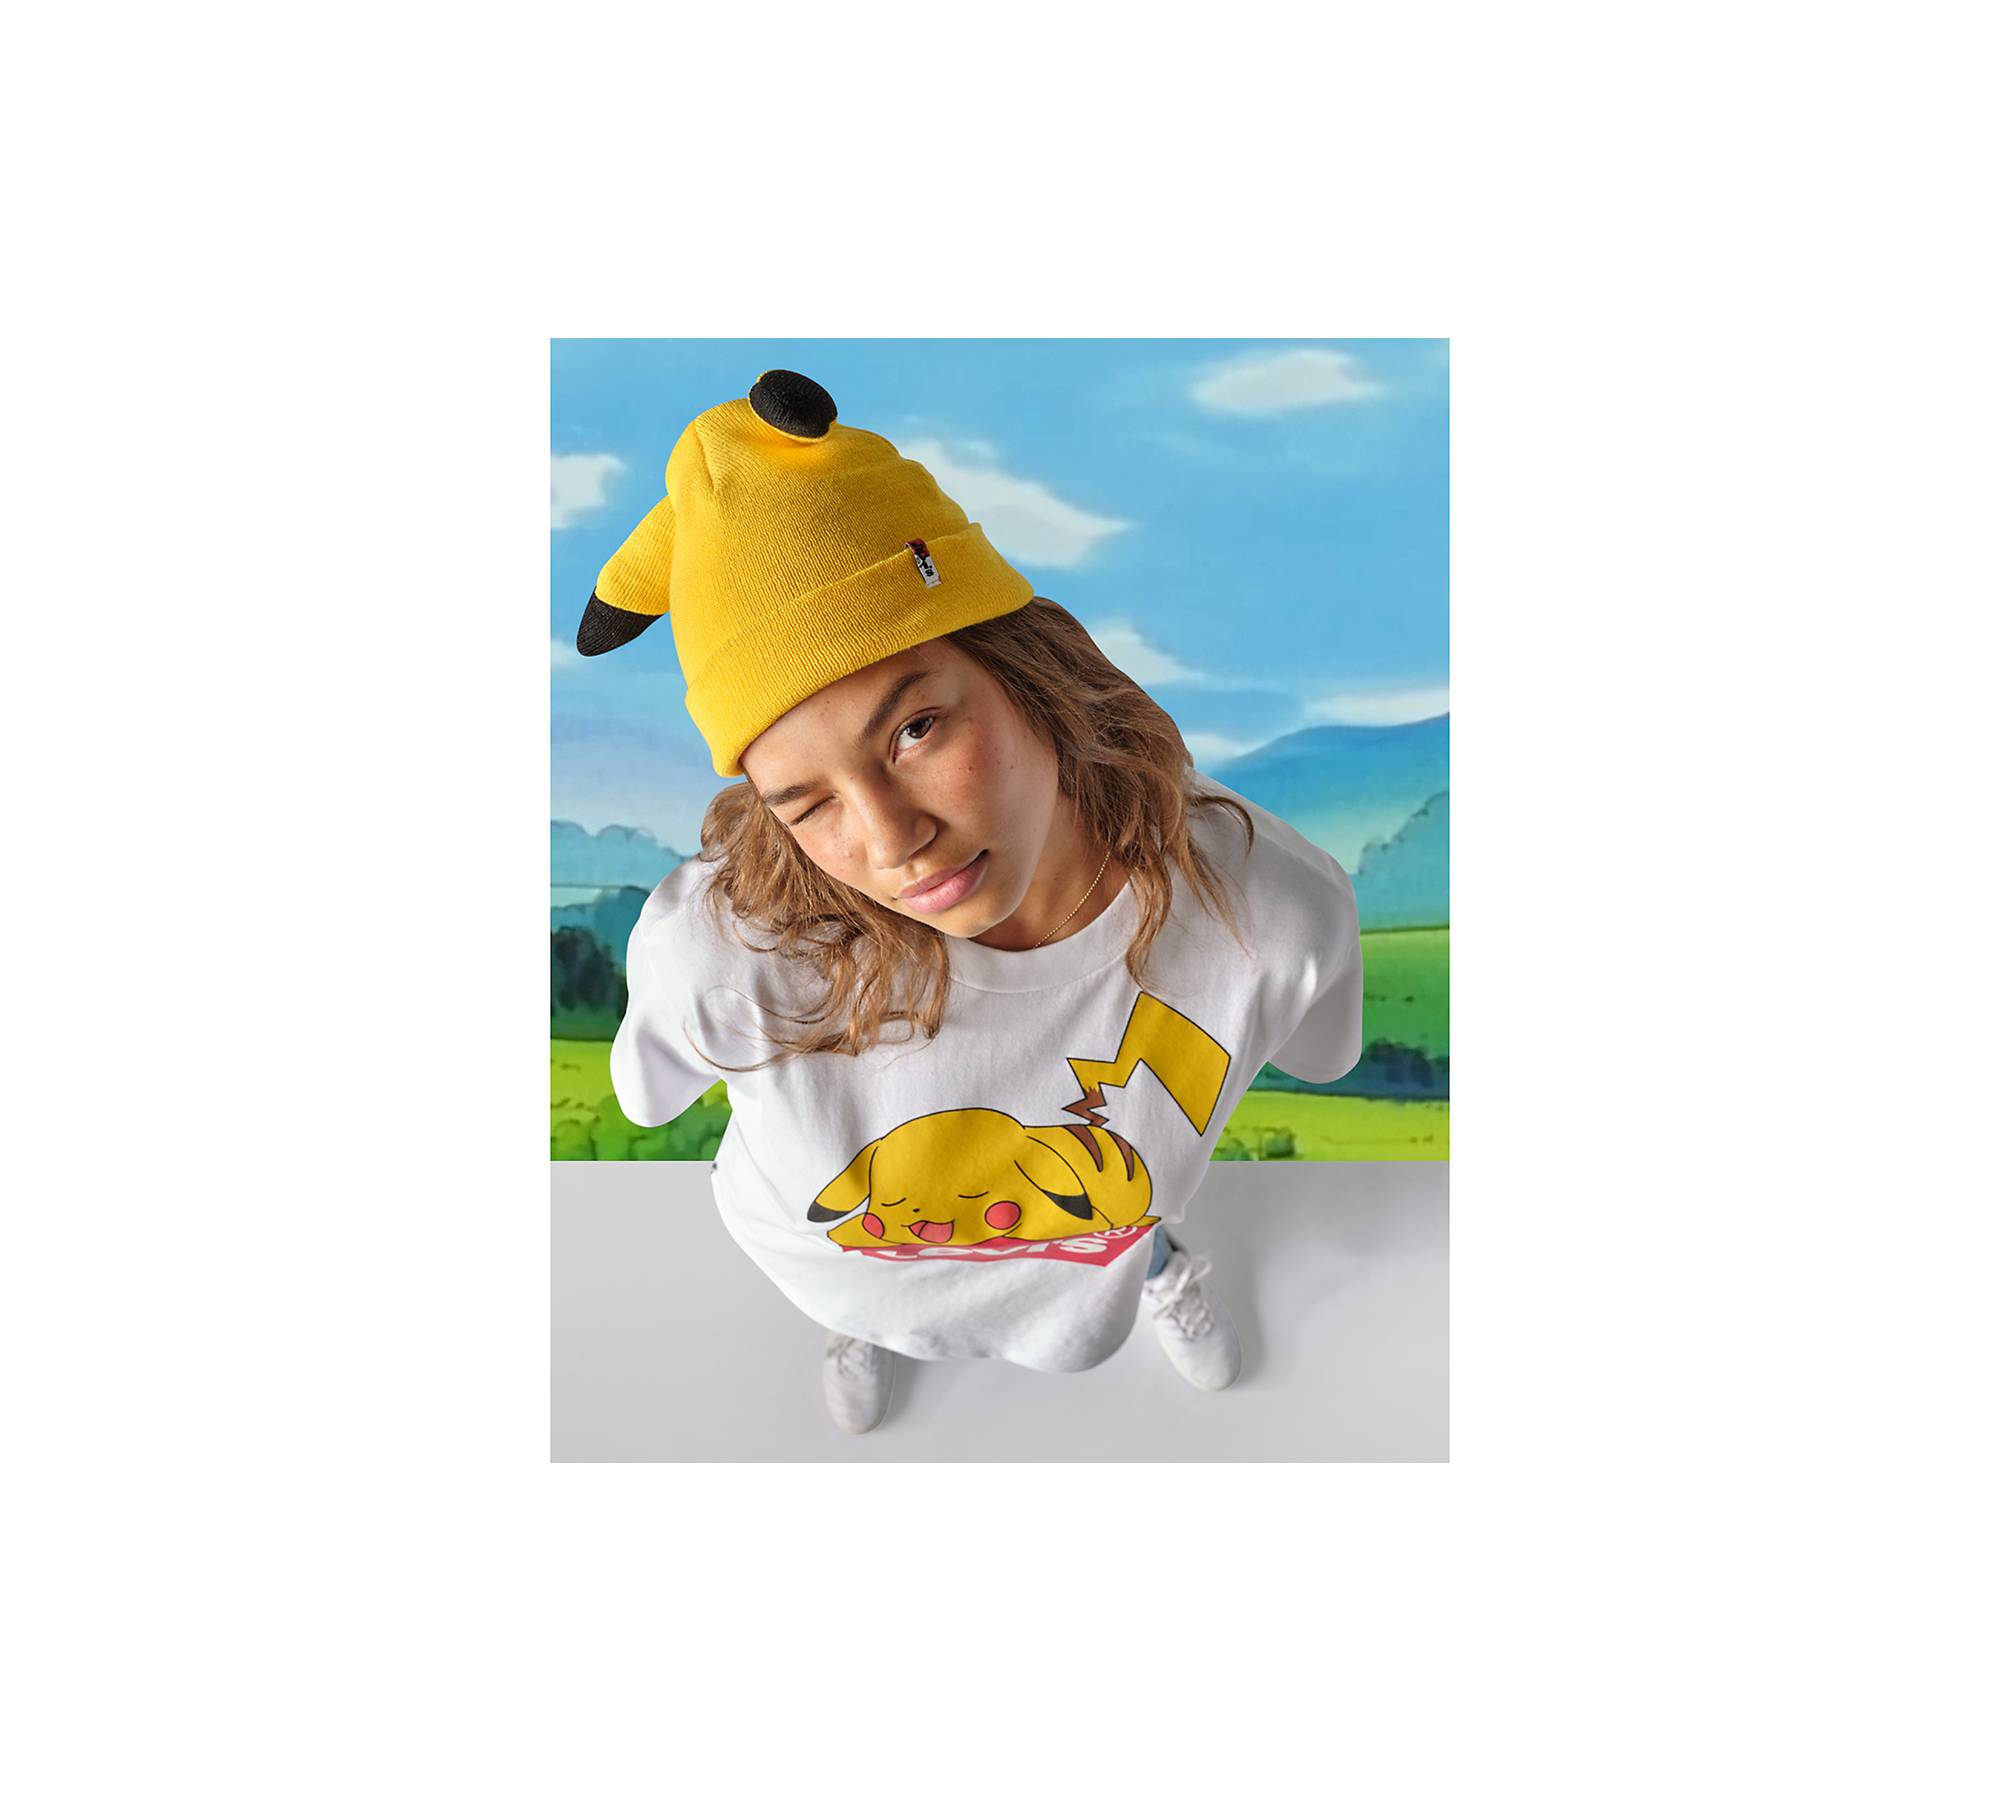 Les curiosités de MyT: Mets ton bonnet Acte II : Le mini bonnet Pikachu